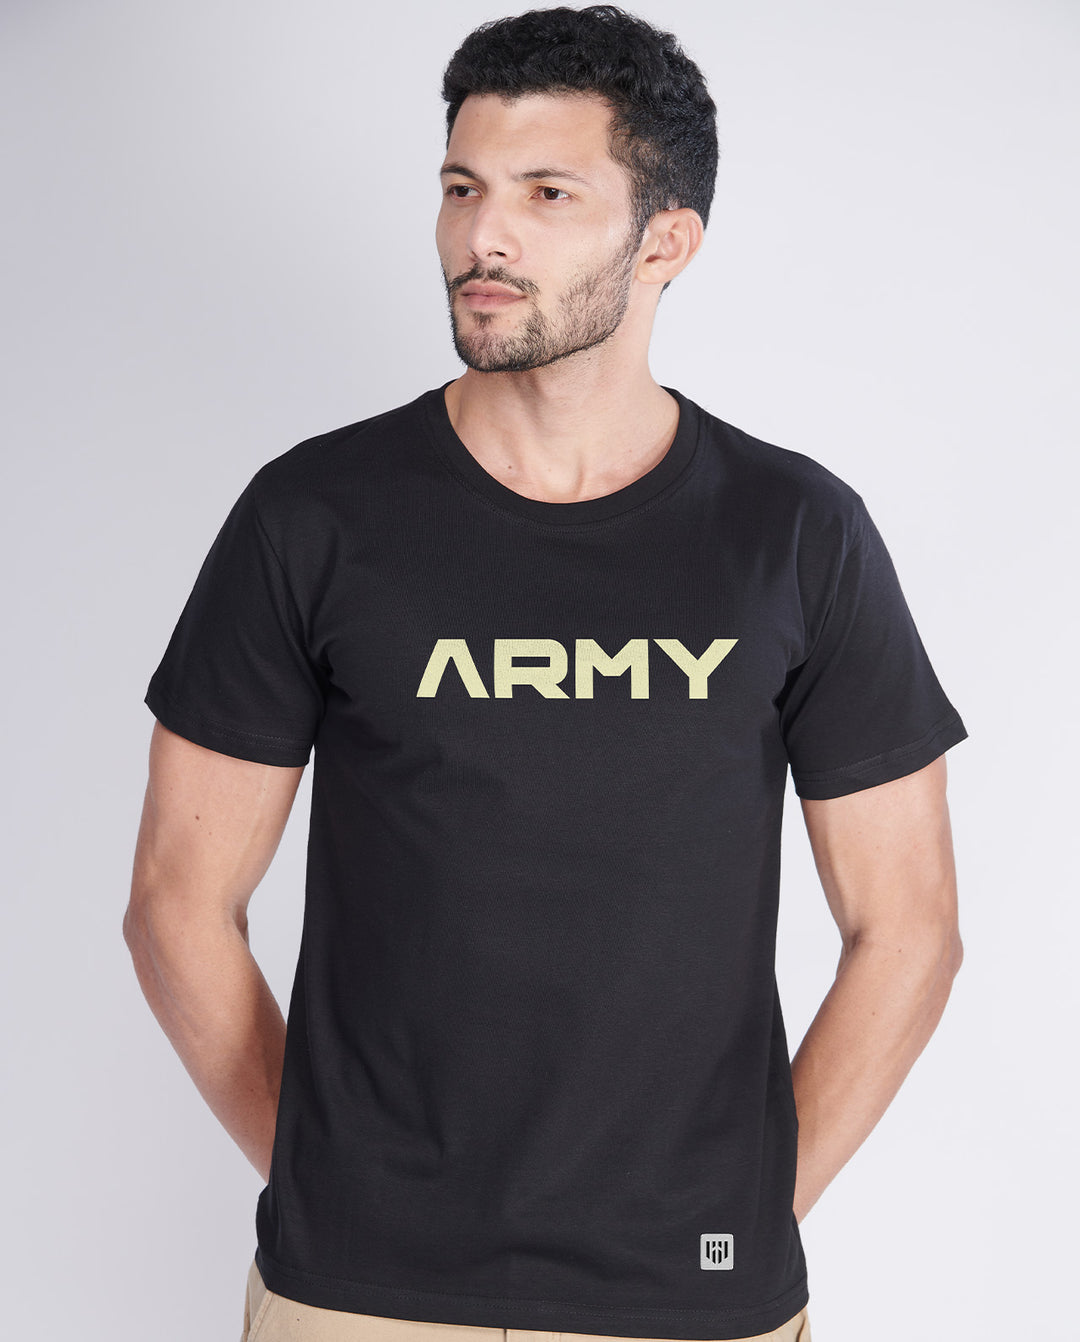 Army Pride T-Shirt